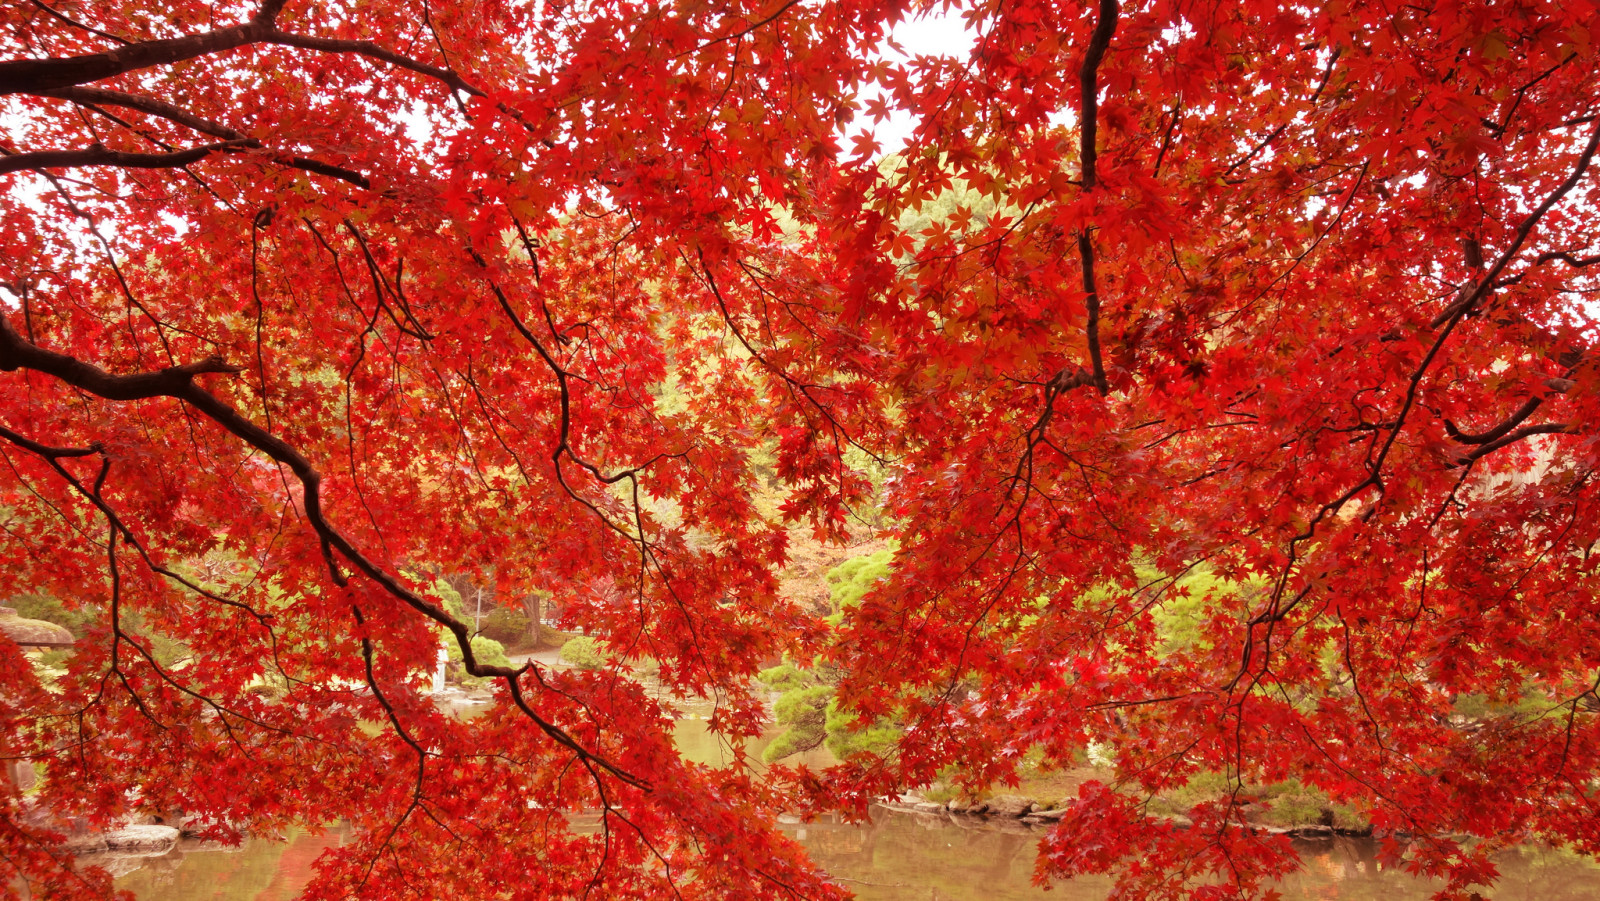 ฤดูใบไม้ร่วง, สาขา, สวน, ต้นไม้, ใบไม้, บ่อน้ำ, ต้นเมเปิล, สีแดงเข้ม